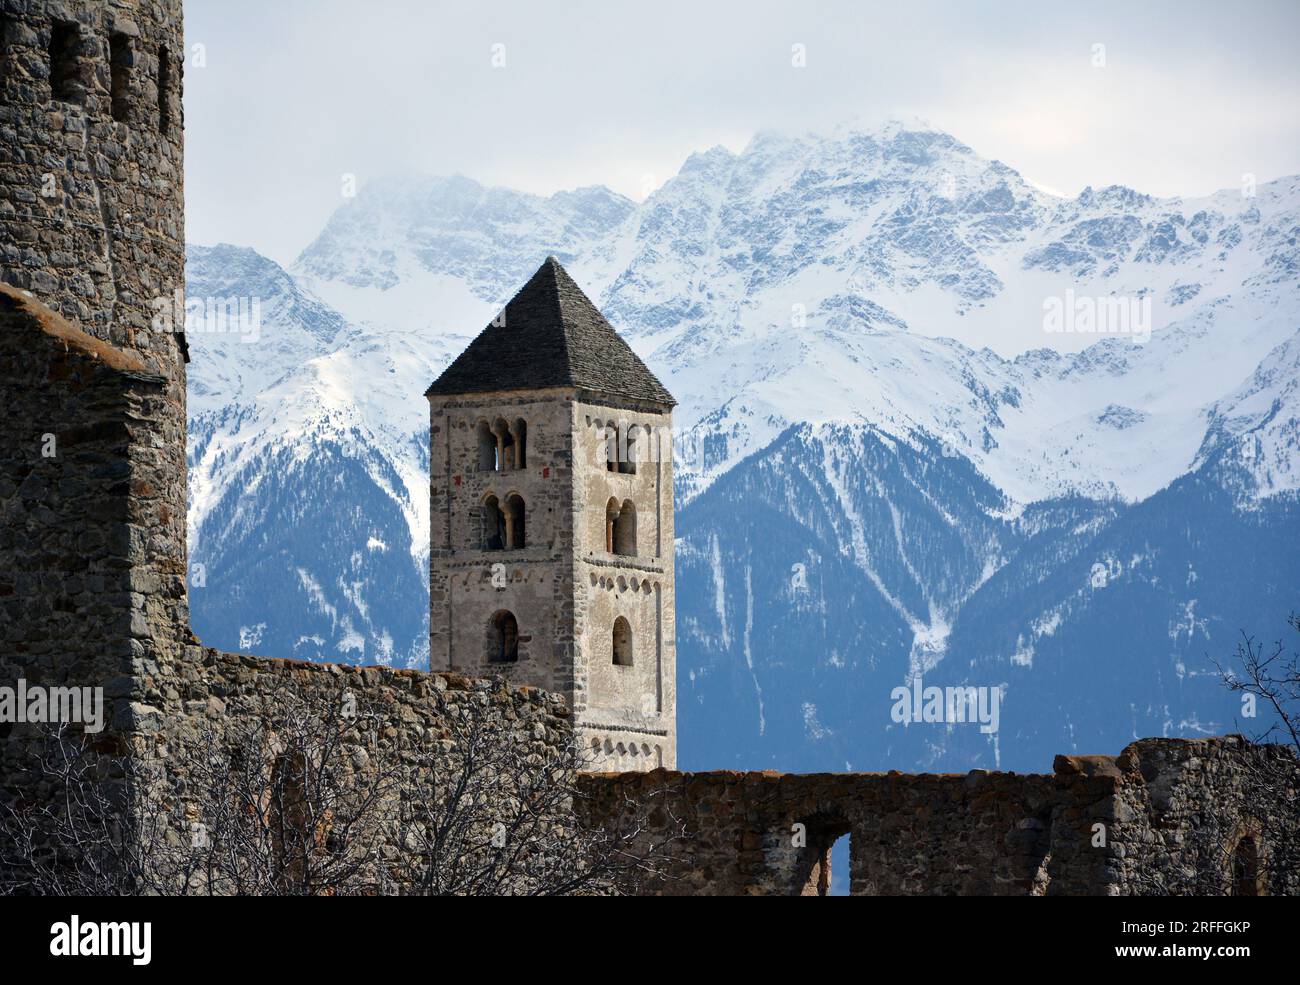 Torre della vecchia St. John's Church. Il bordo della Torre Fröhlich è visibile sulla sinistra. Malles/Malles, Val Venosta/Vinschgau, alto Adige, Italia, ne Foto Stock